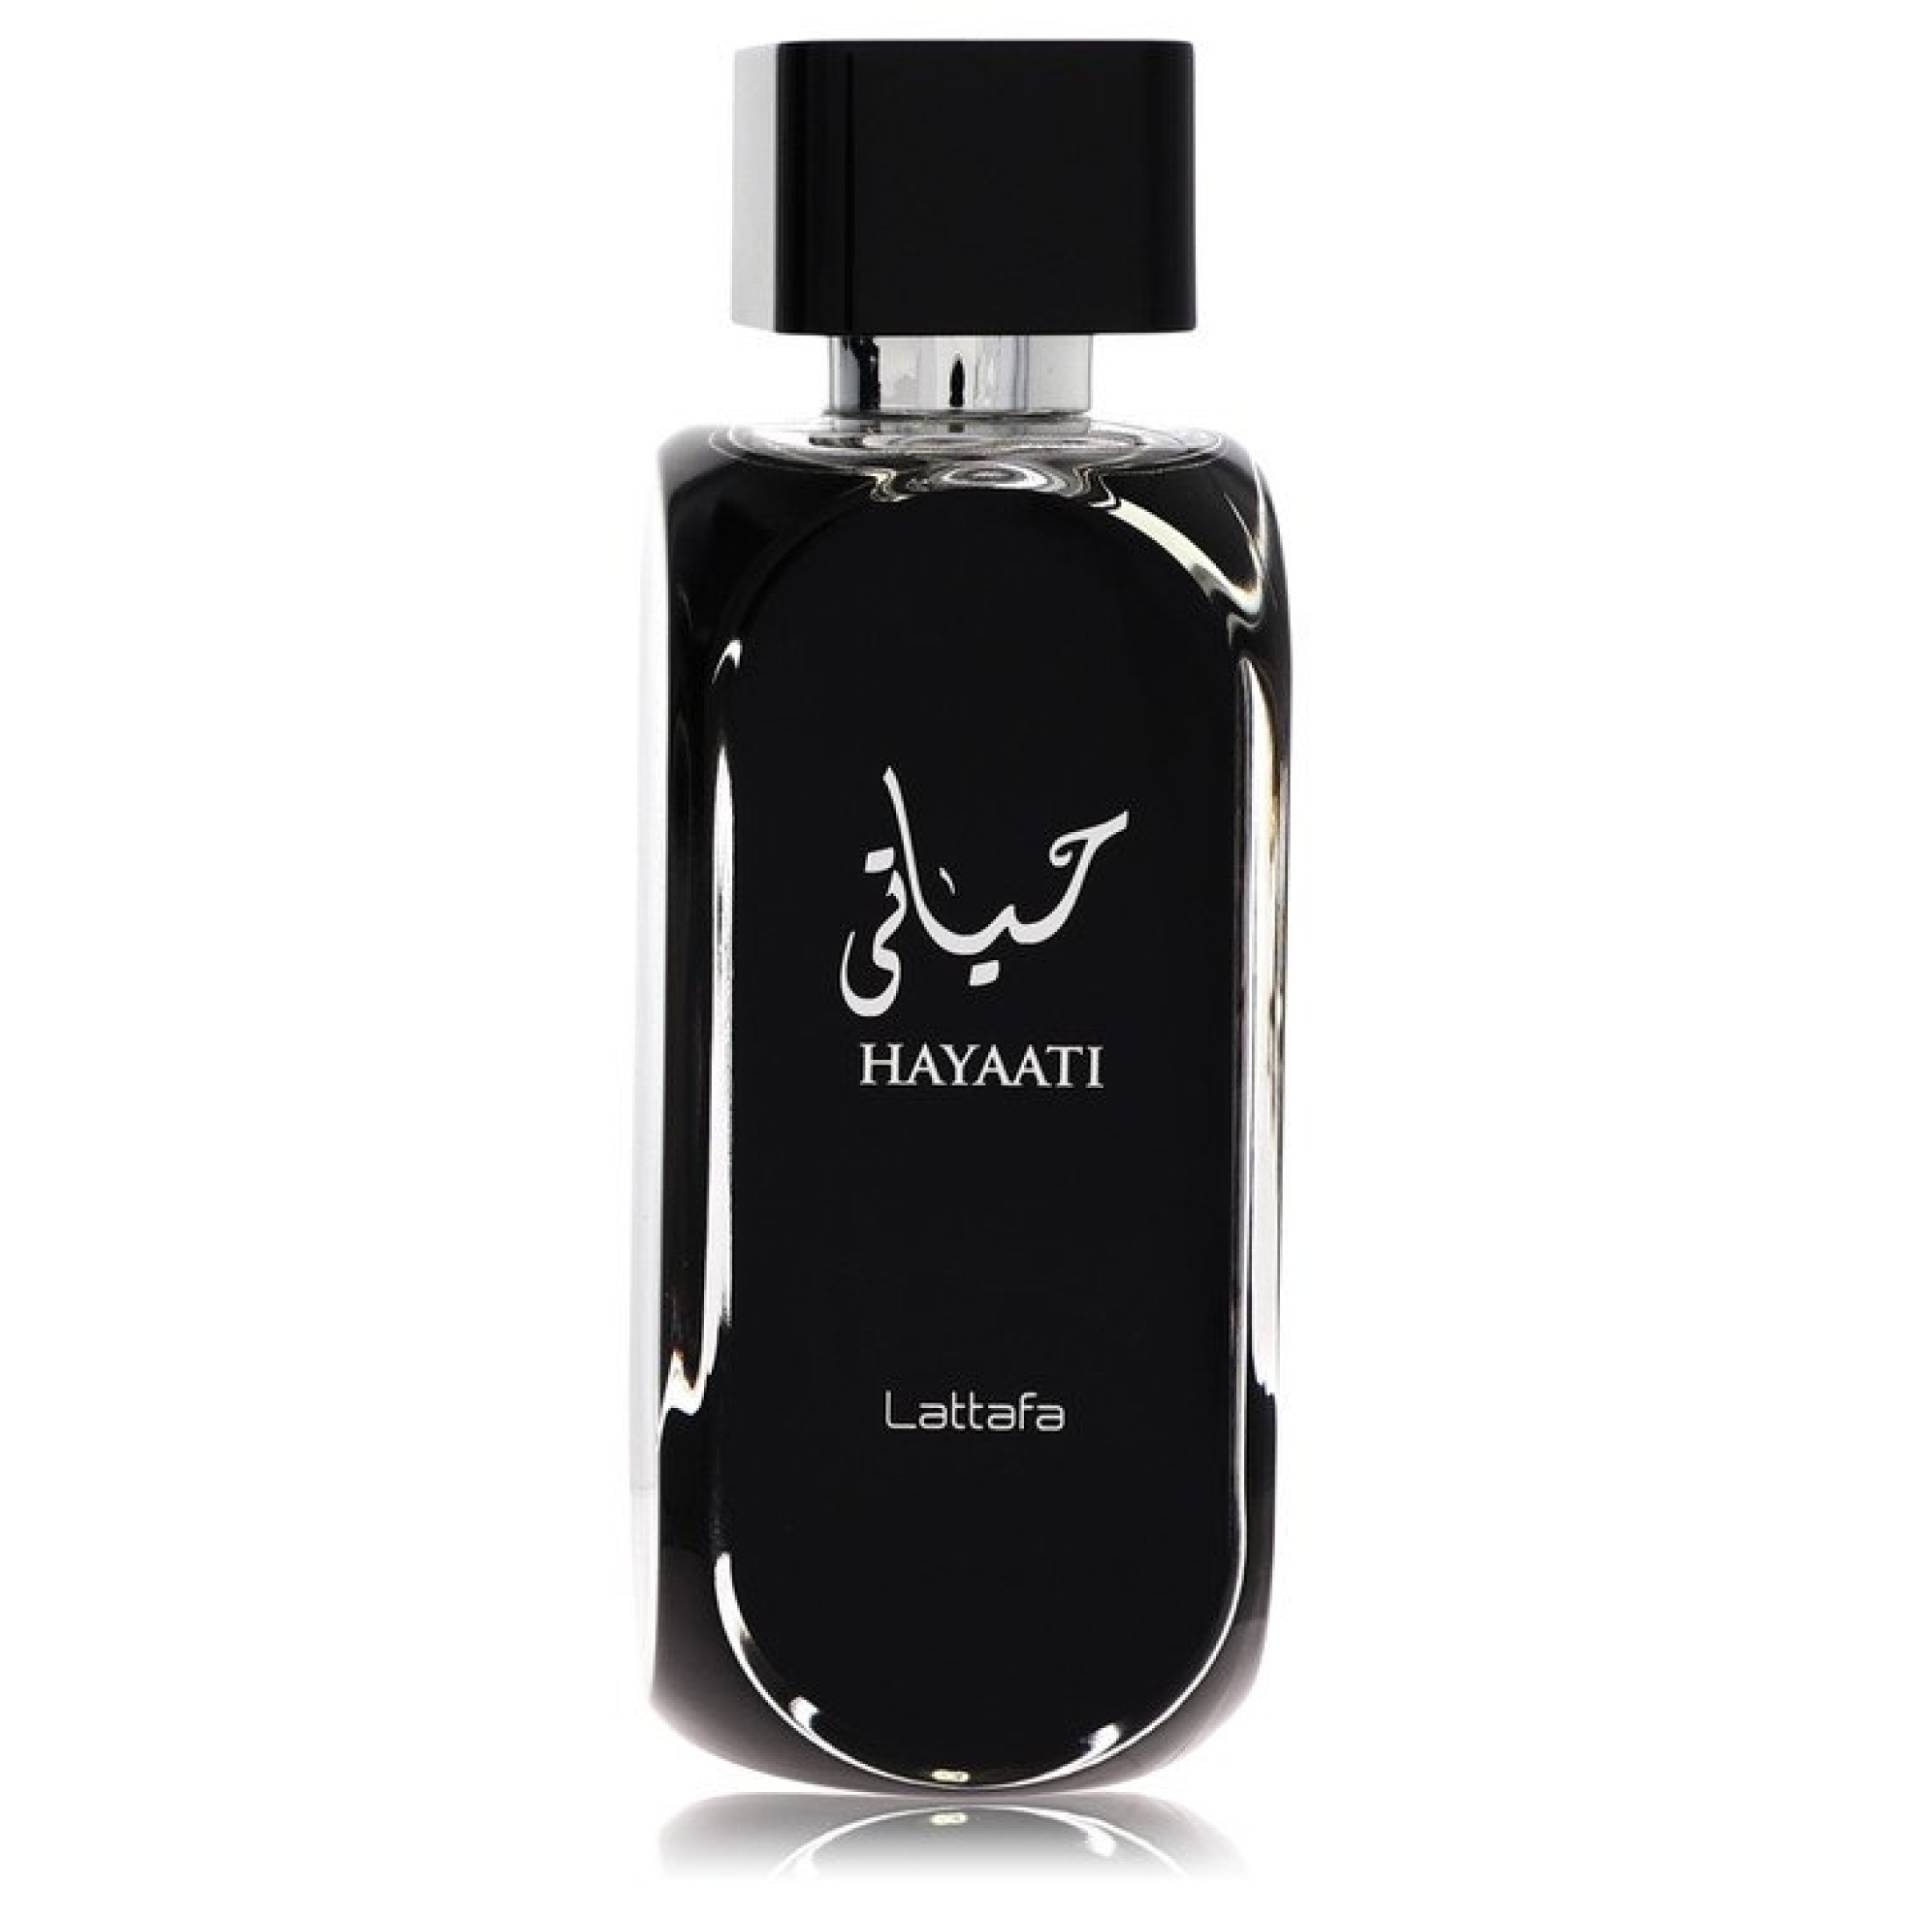 Lattafa Hayaati Eau De Parfum Spray (Unboxed) 101 ml von Lattafa